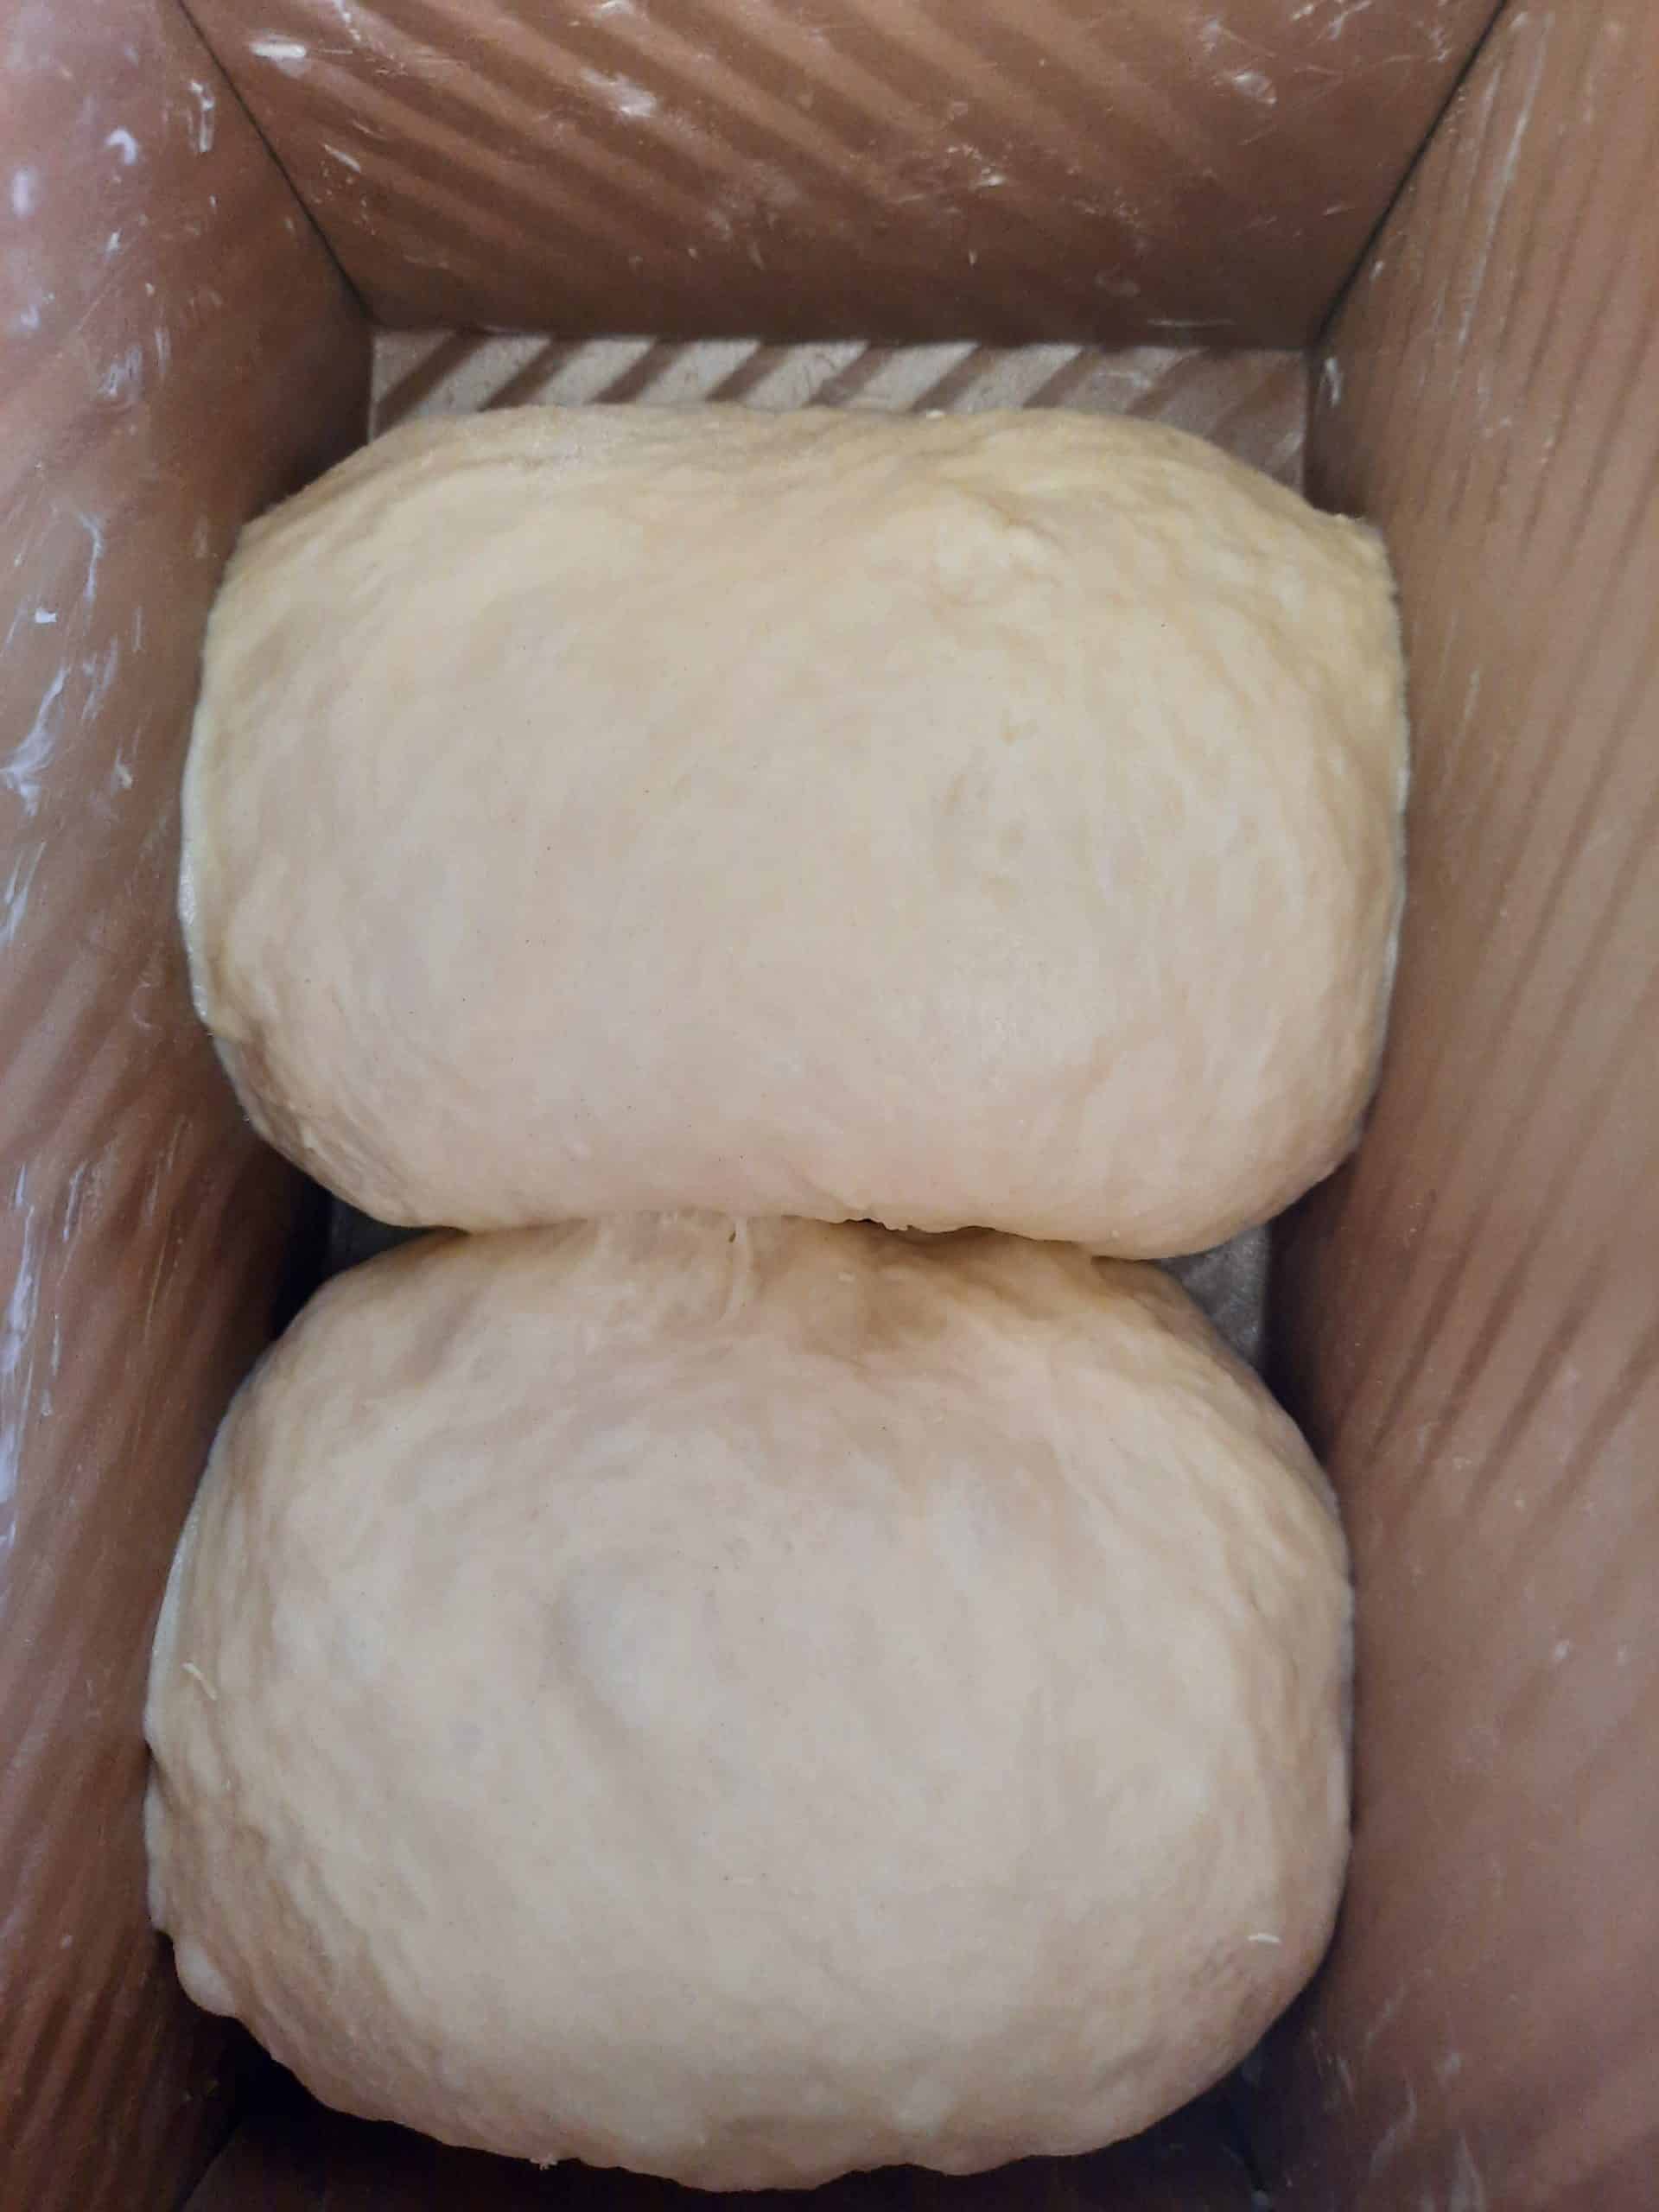 放入整形完成的麵團（每模放 2 個）入模完成後，將麵團室溫靜置進行最後發酵。Put the shaped original dough (2 pieces per mold) into the mold, let the dough stand at room temperature for final fermentation.